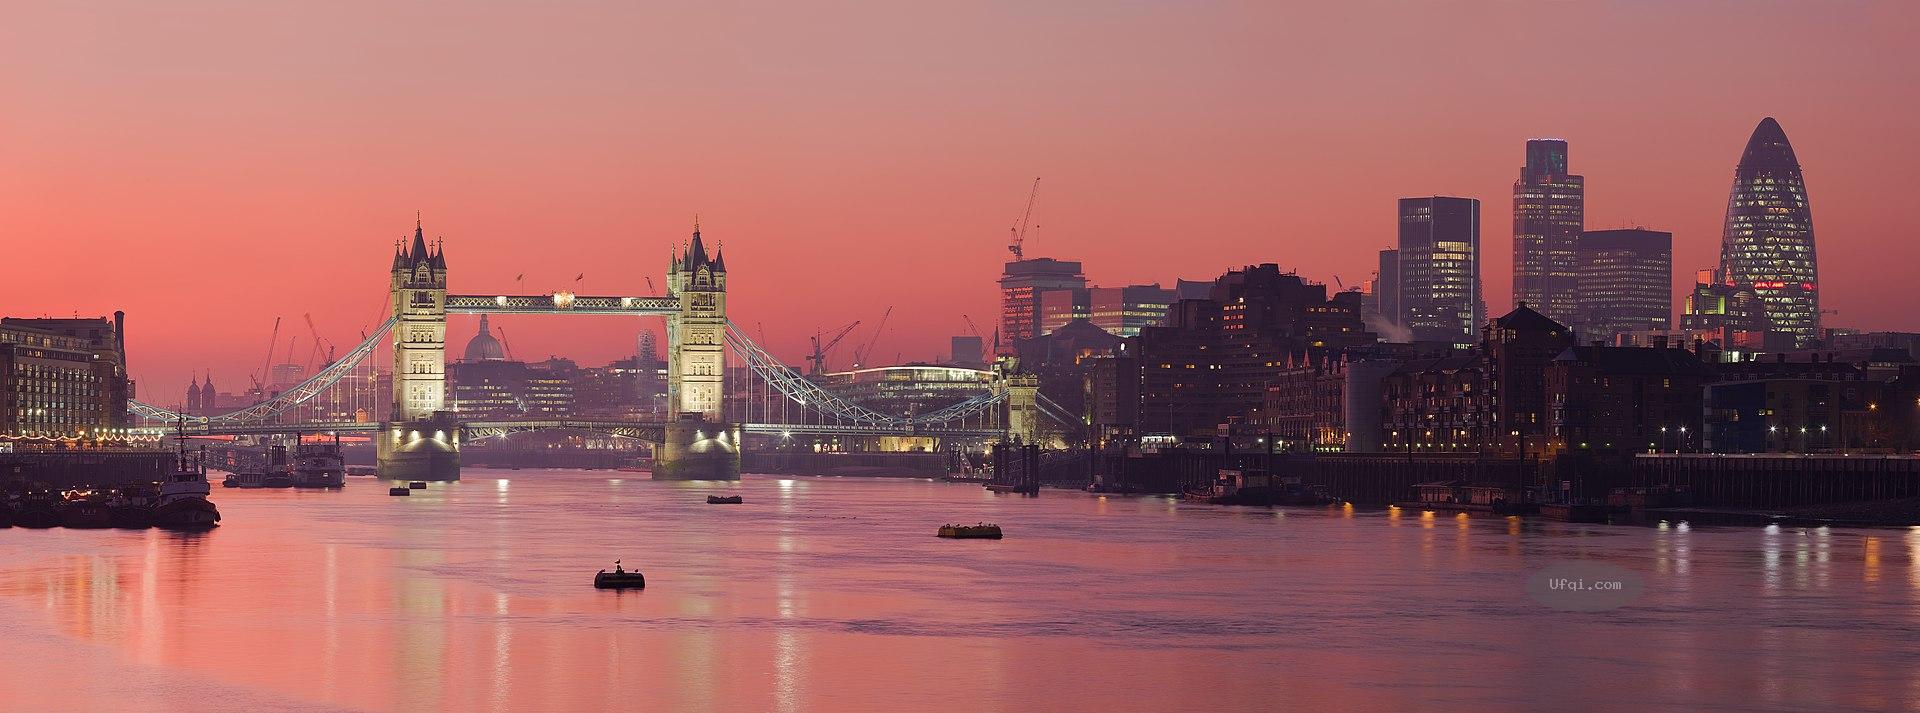 英国伦敦UK London城市风景-人文景观与自然风光和谐交融-8